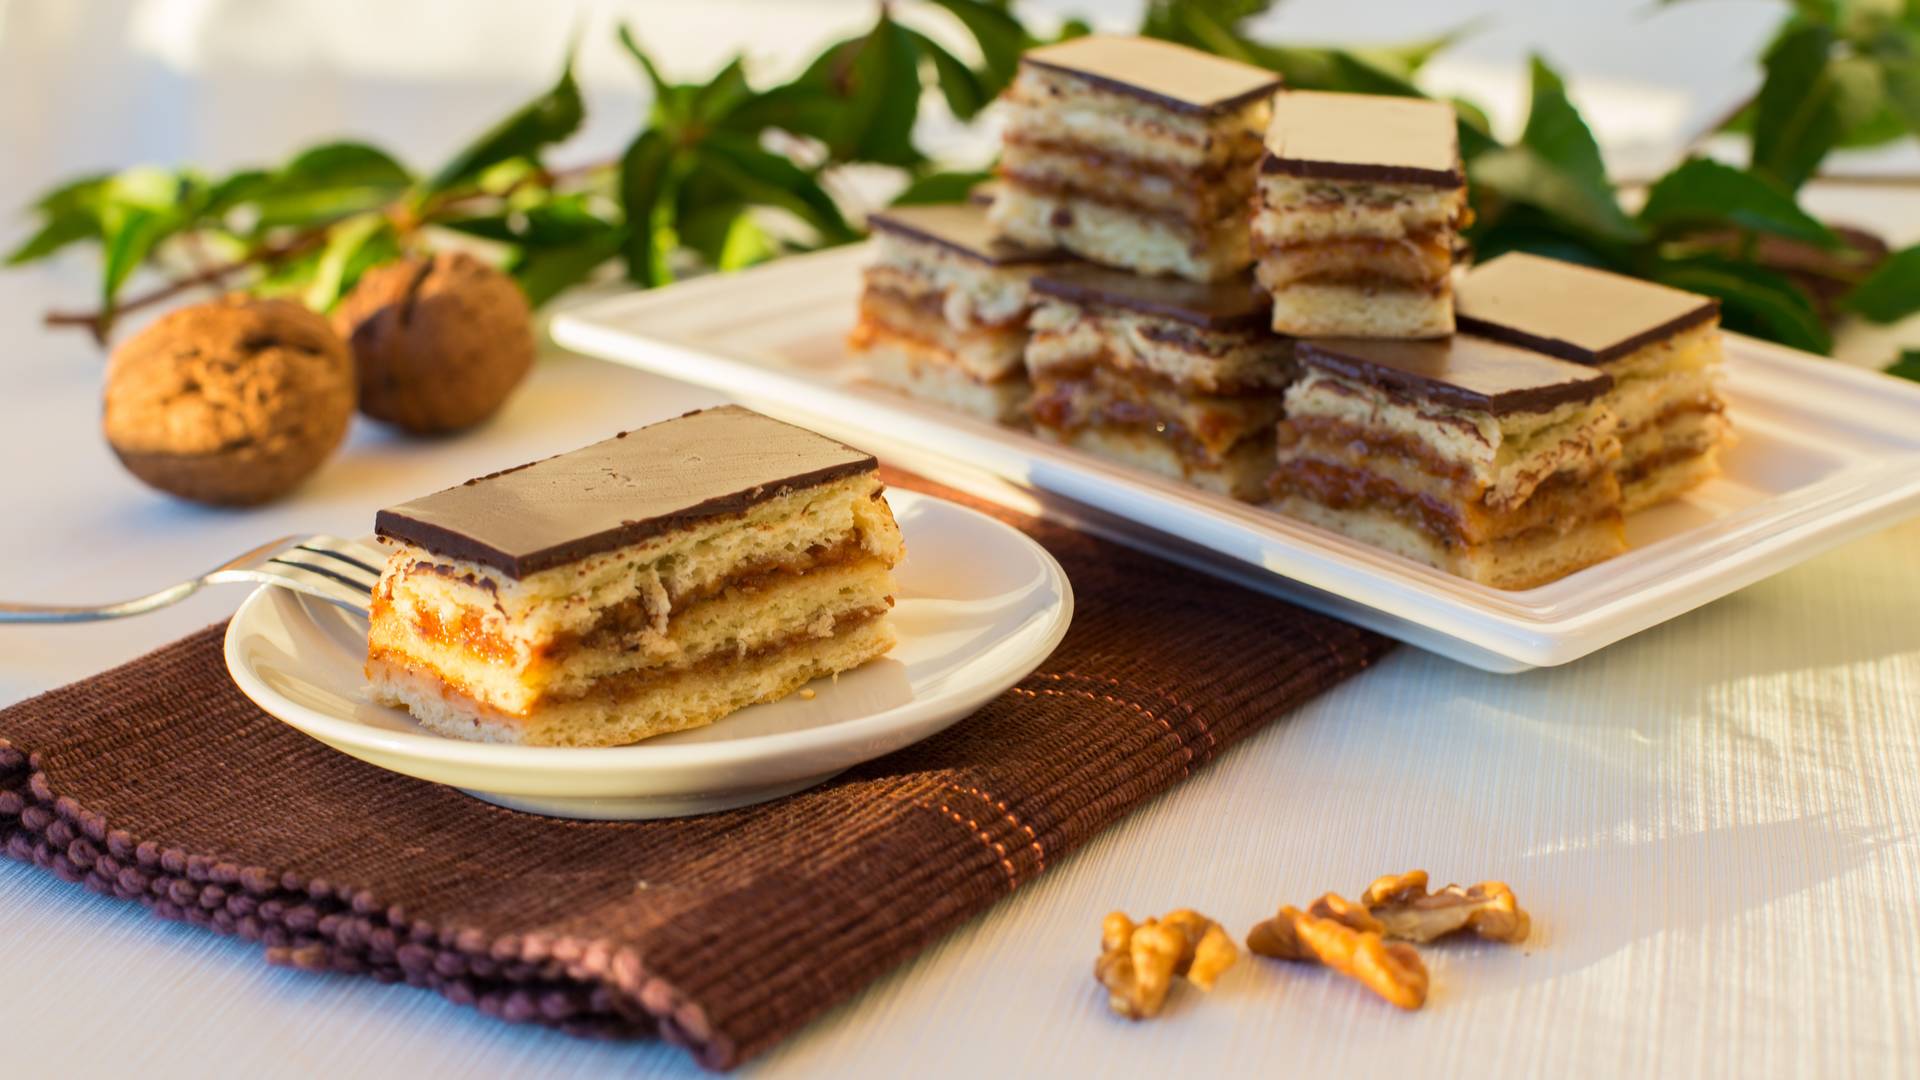 Már tudjuk, mi Magyarország kedvenc süteménye! Egyetértesz az eredménnyel?